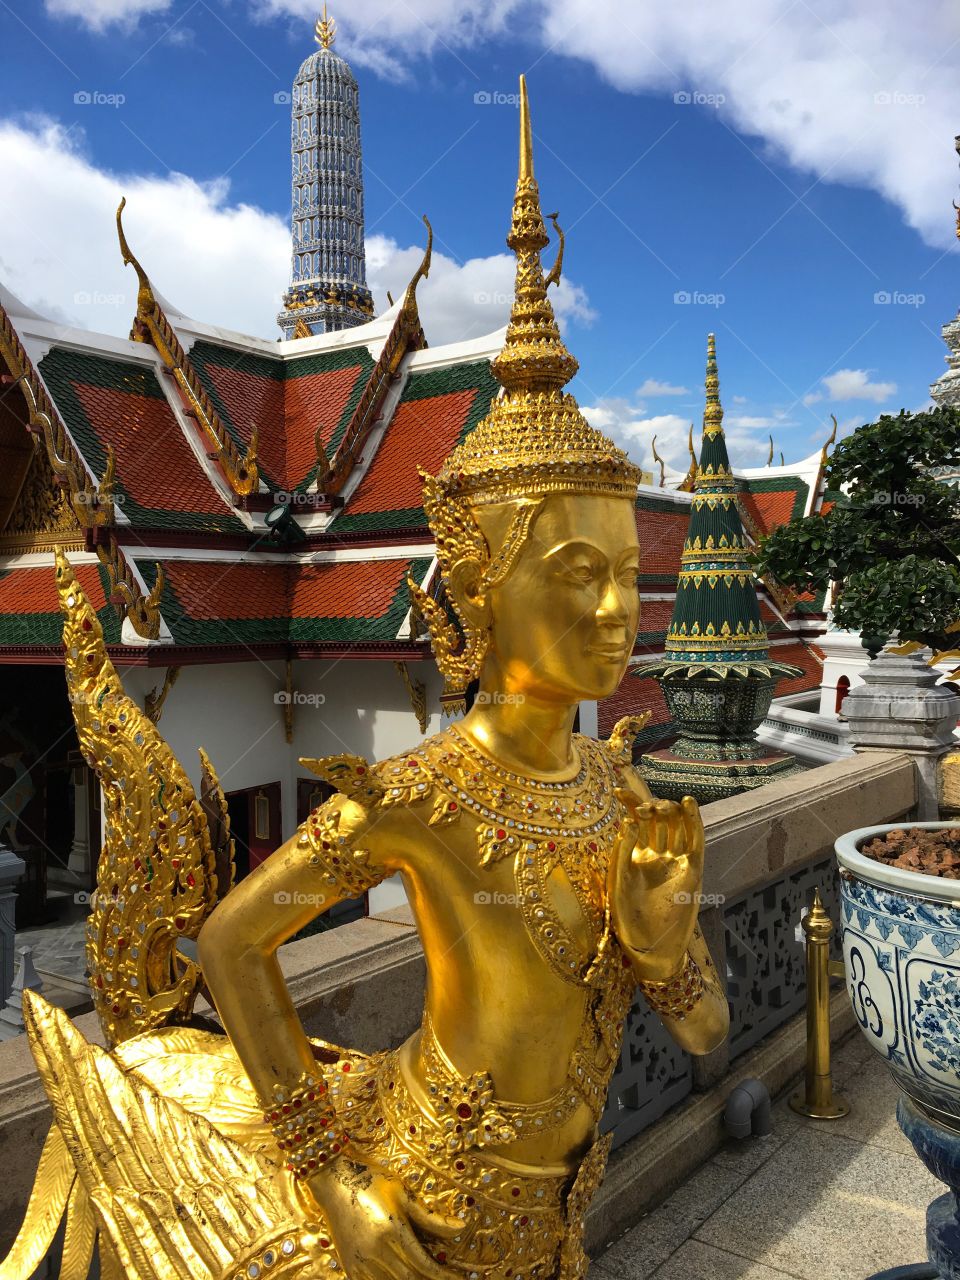 Grand Palace / Bangkok Thailand 48